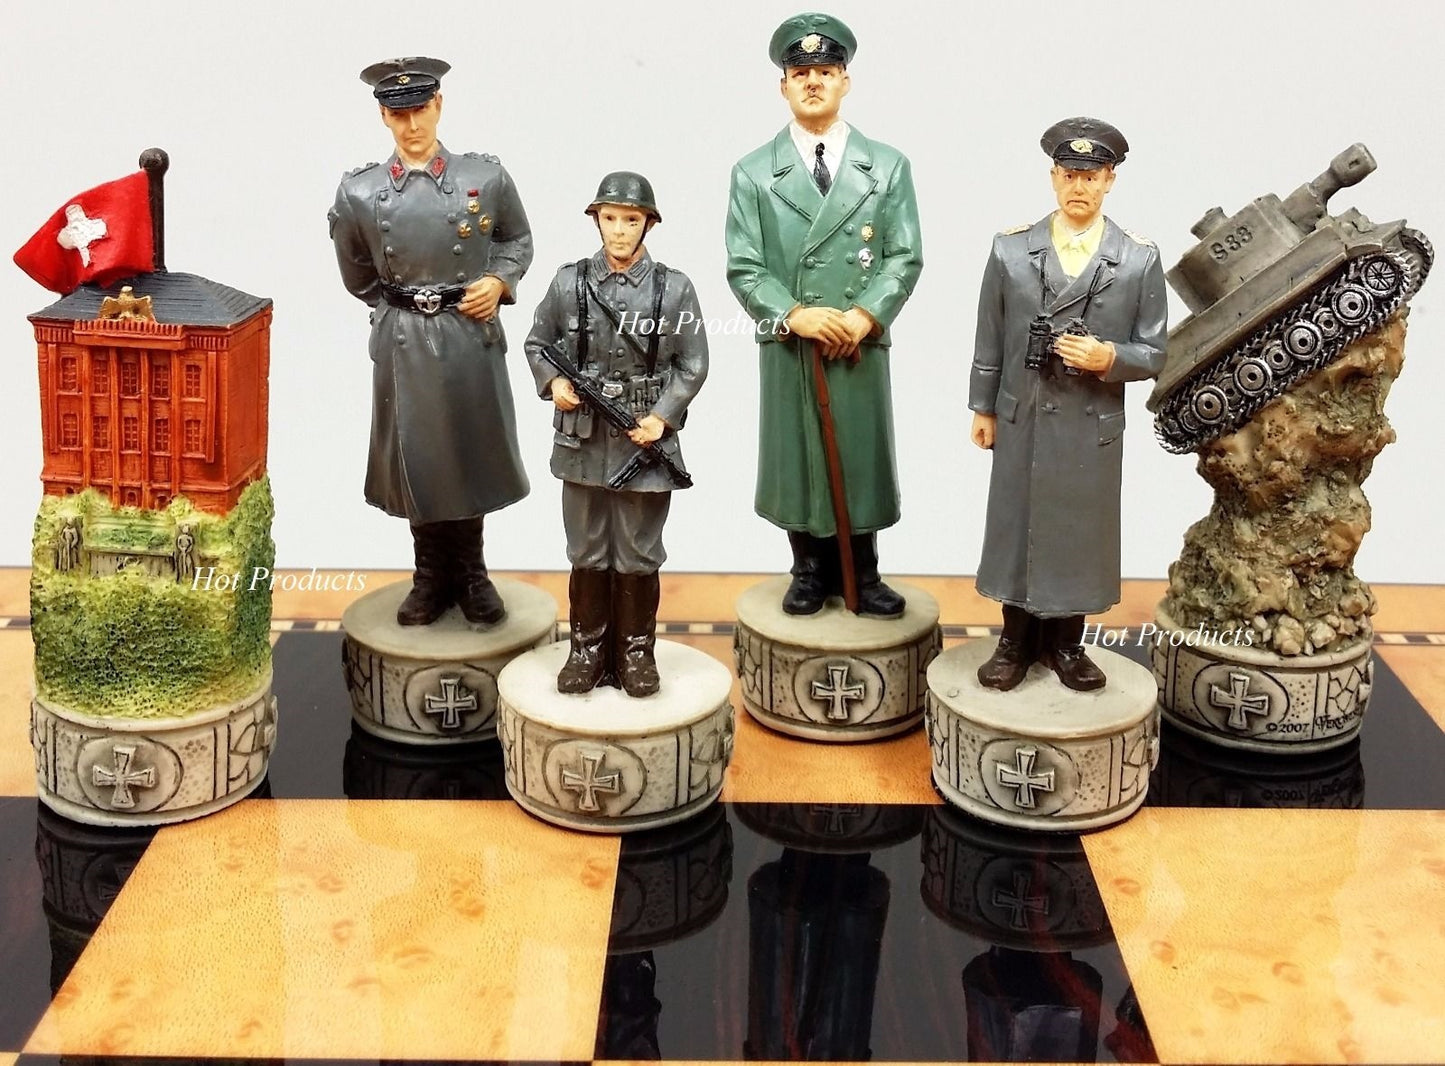 WW2 US vs Germany Chess Set W 17" Walnut & Maple Color Storage Board